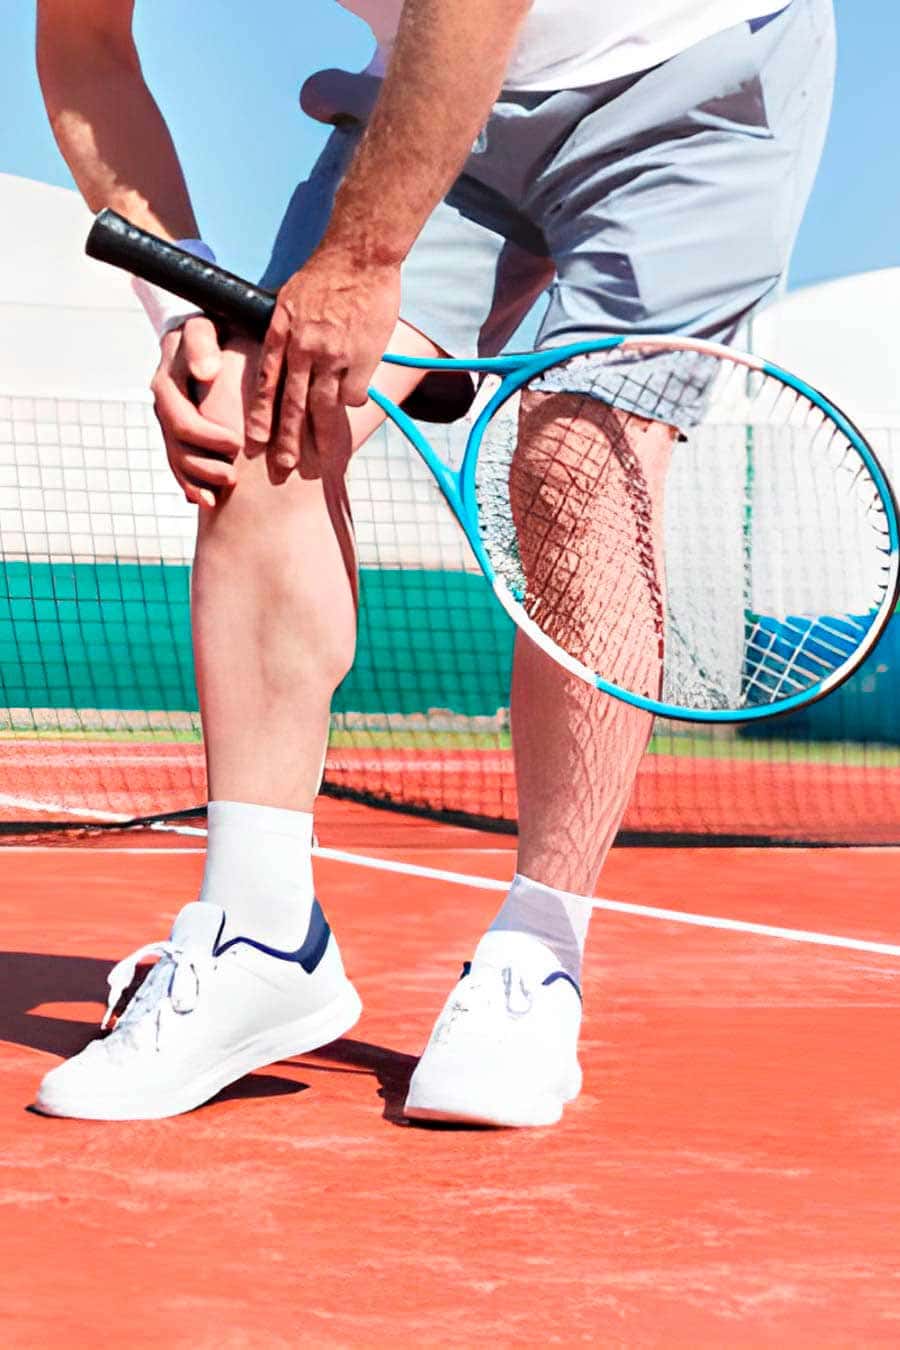 Tennis leg: rotura de fibras en el gemelo